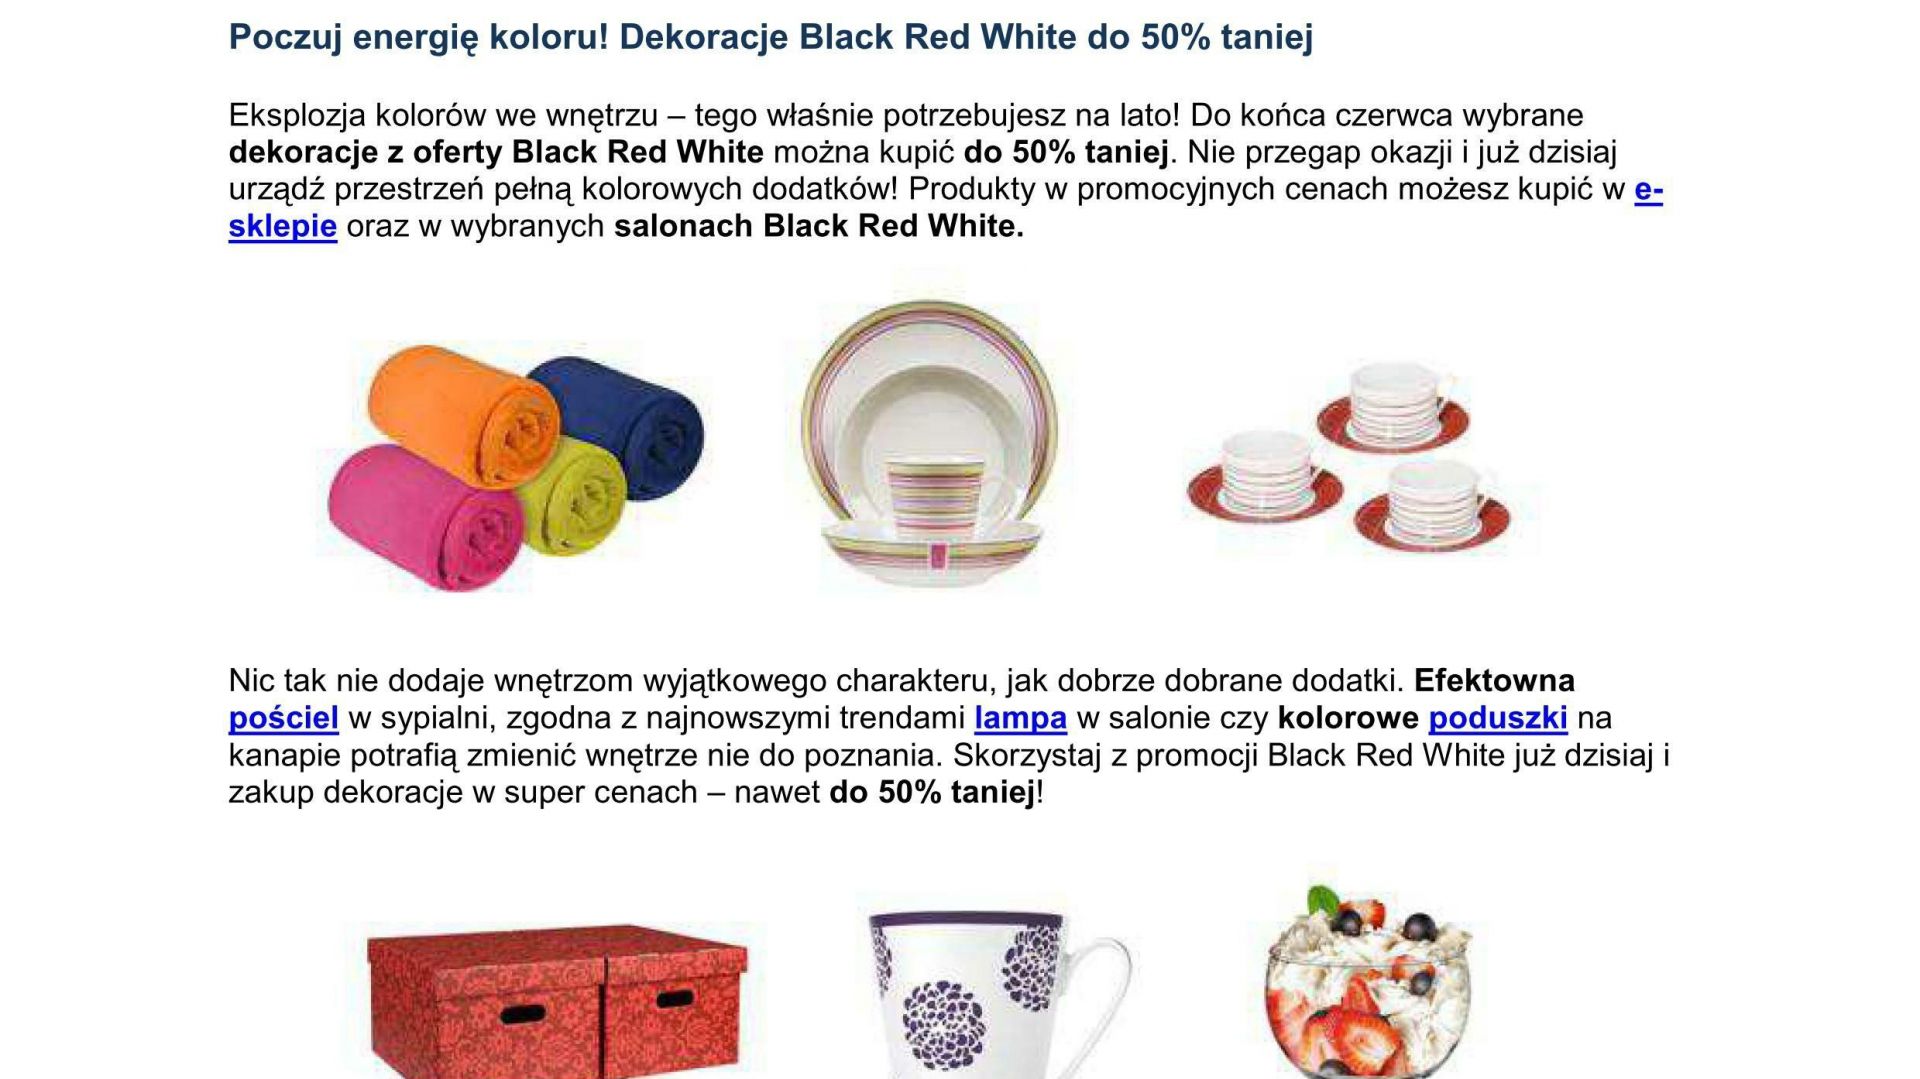 Black Red White - dekoracje nawet do 50% taniej